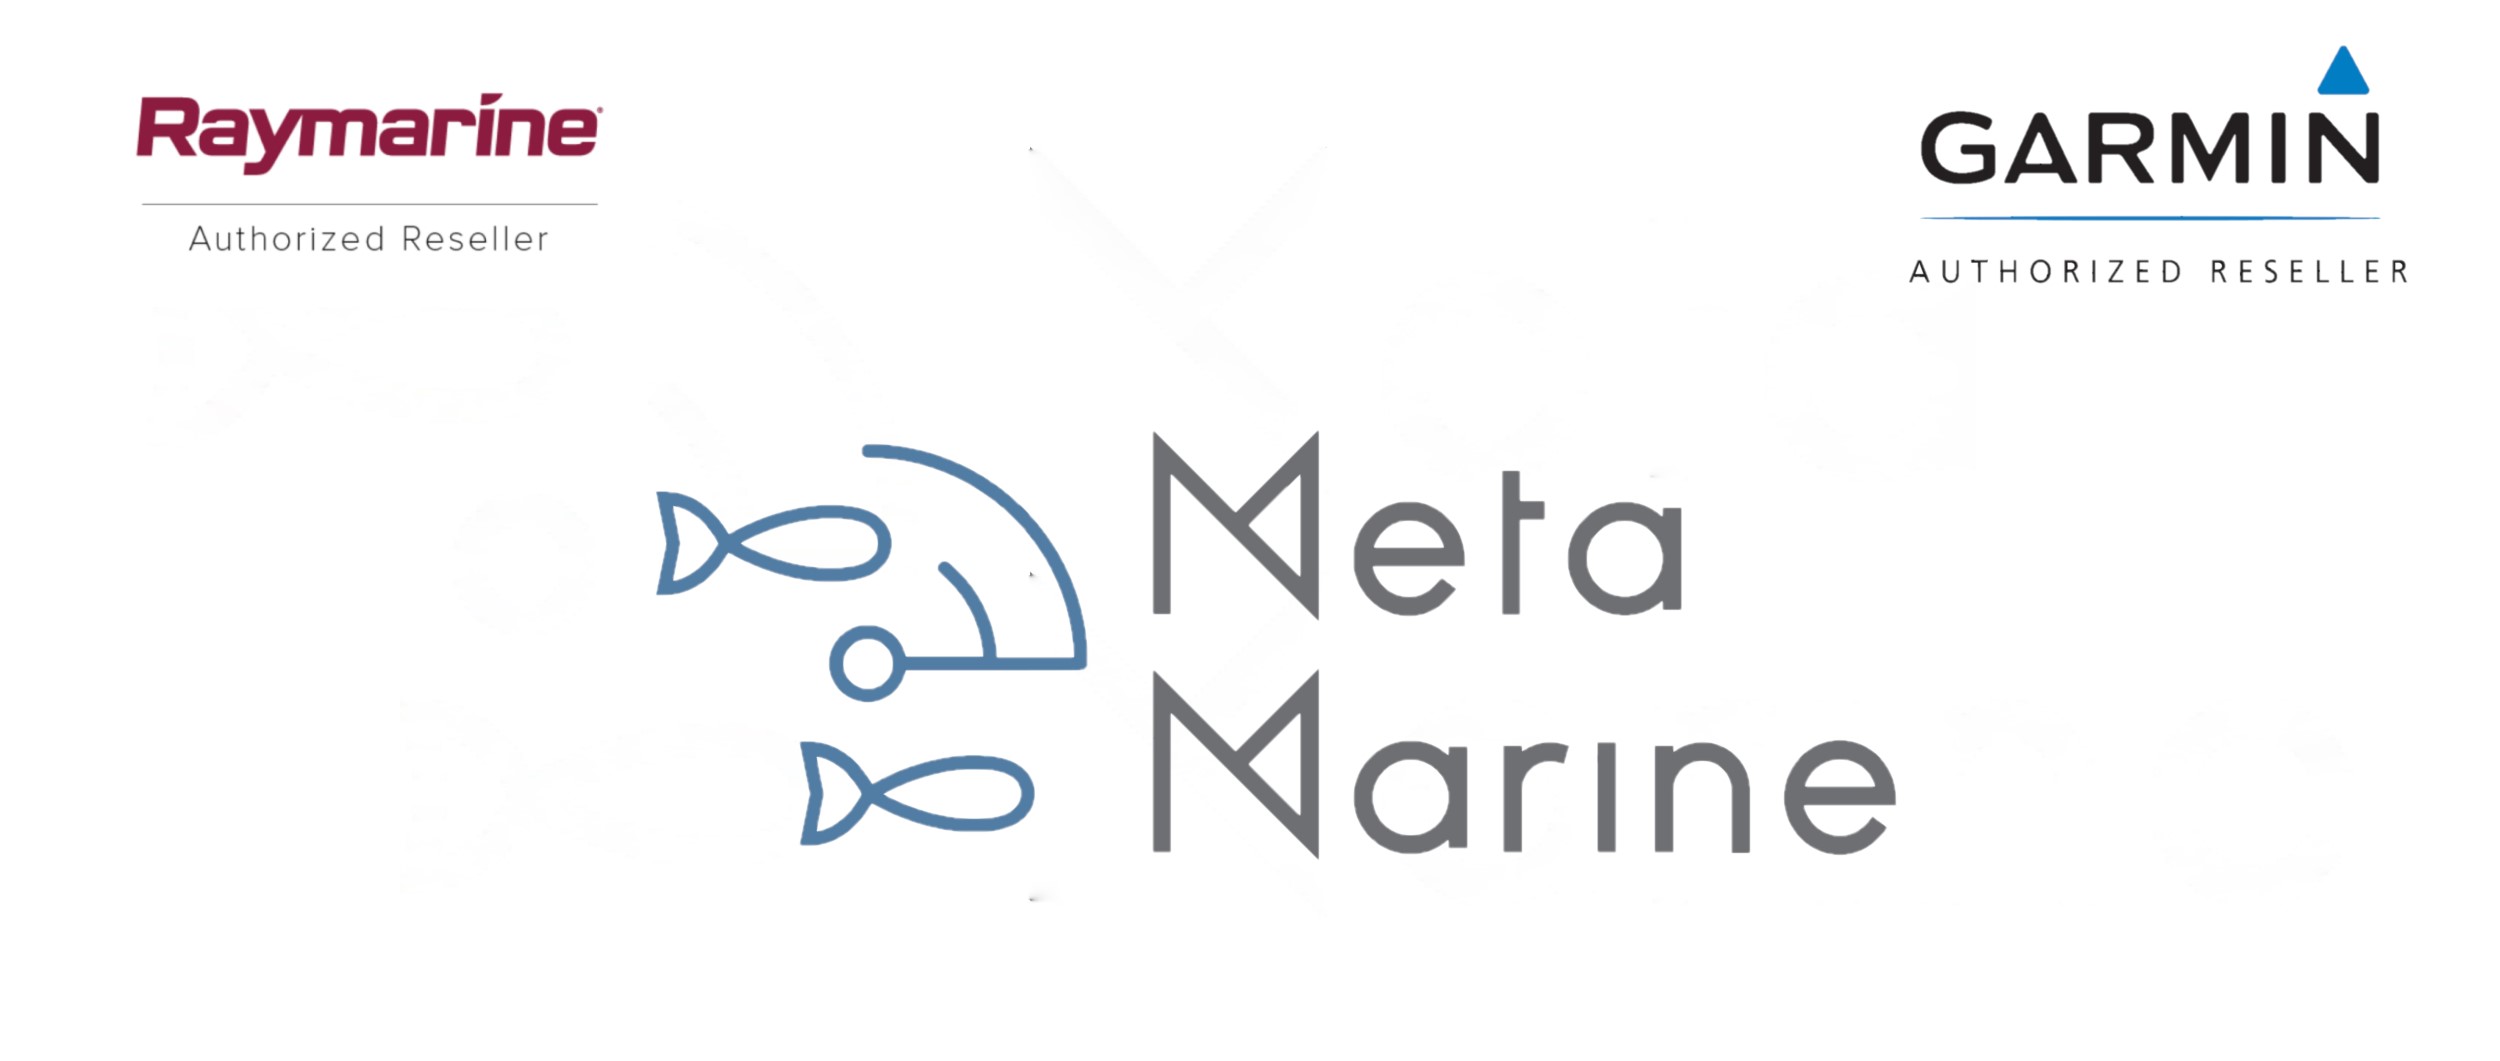 Image with Raymarine Authorized Reseller logo, Garmin Authorized Reseller logo, and Meta Marine's logo.